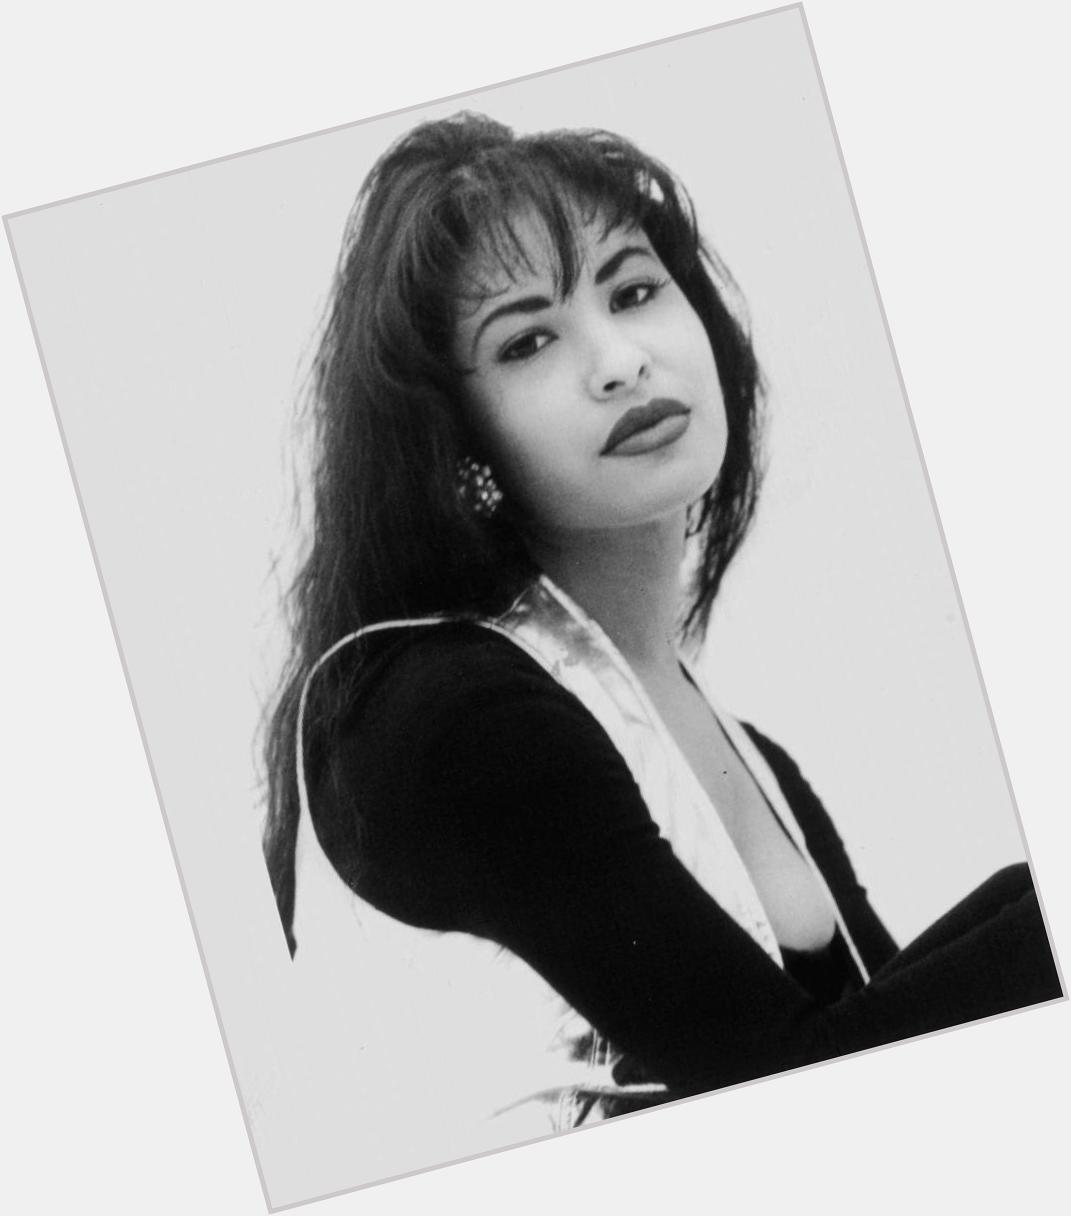 Happy 46th Birthday to the late Selena Quintanilla-Perez (April 16, 1971 - March 31, 1995) 